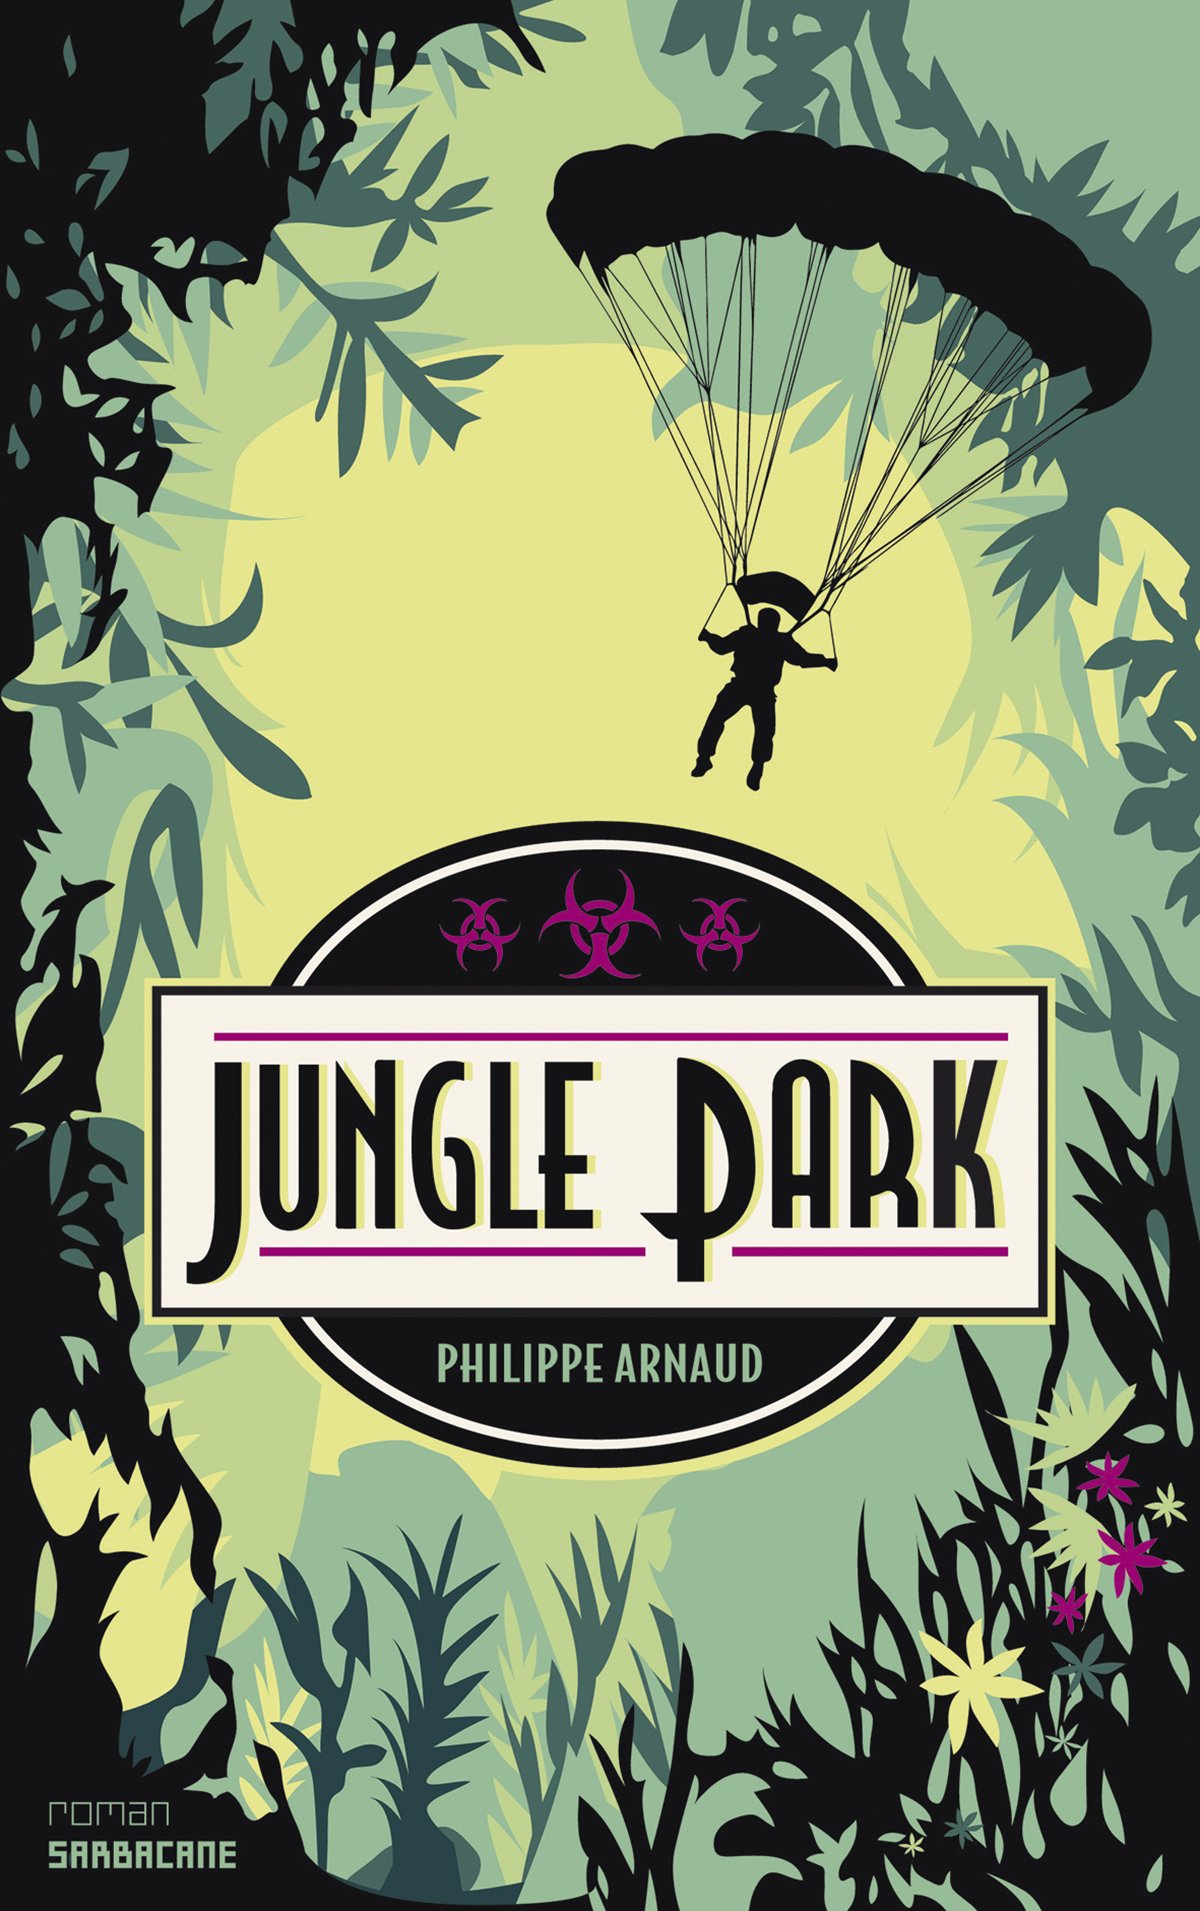 Atelier lecture Jeunesse selection livres des livres pour se perdre dans la jungle Jungle park Philippe Arnaud